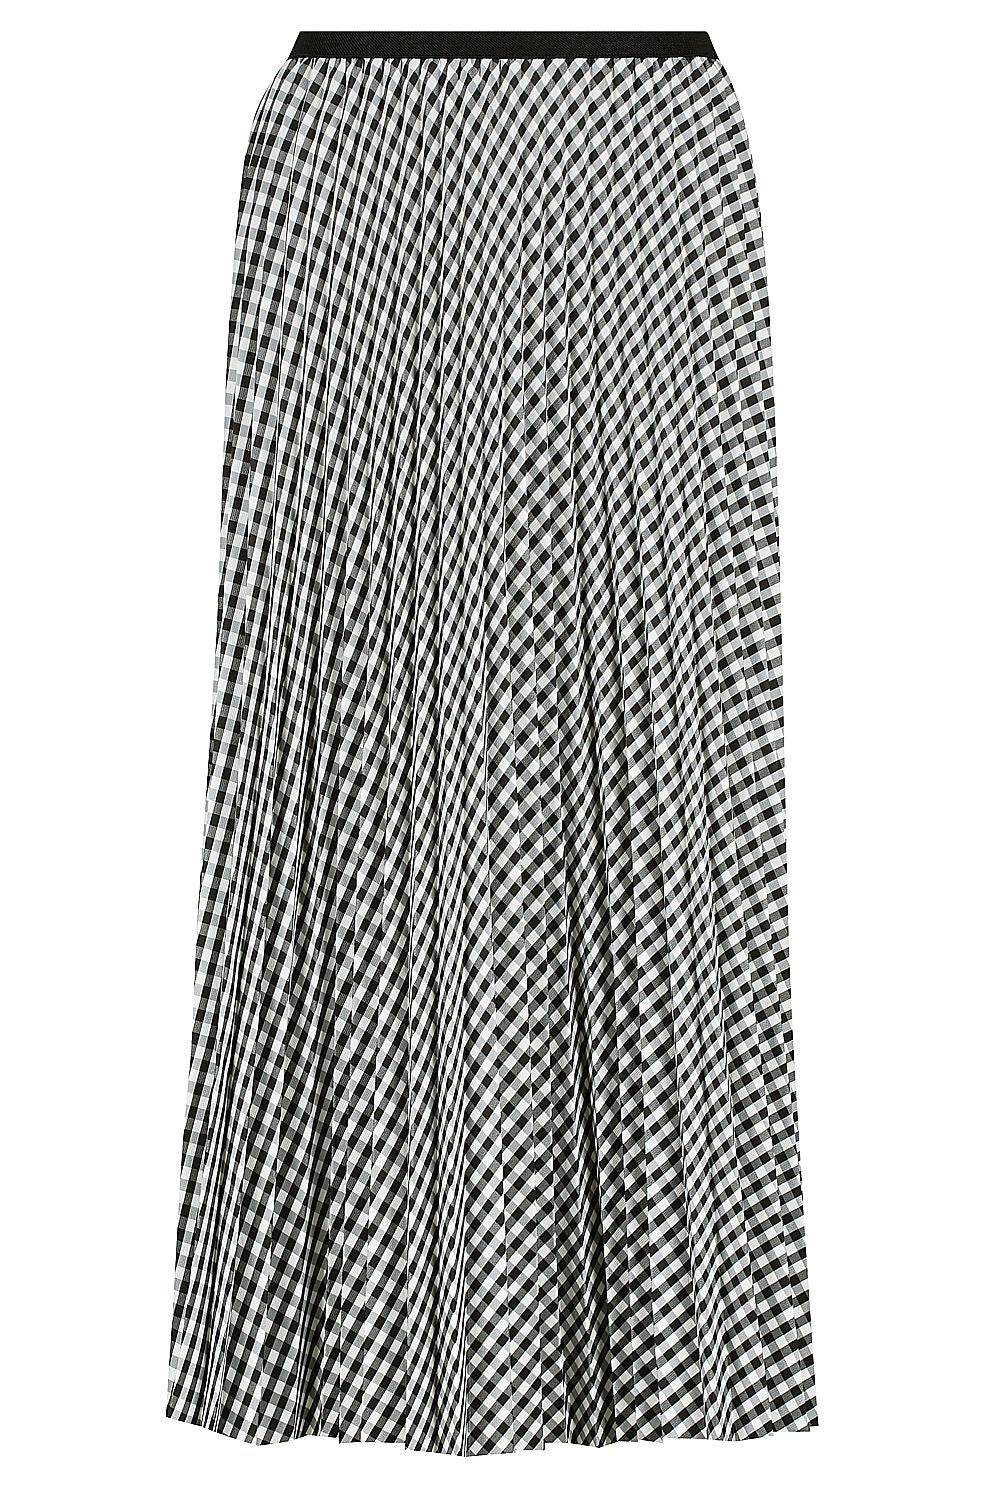 Sofia Pleated Satin Skirt - Black / White Check